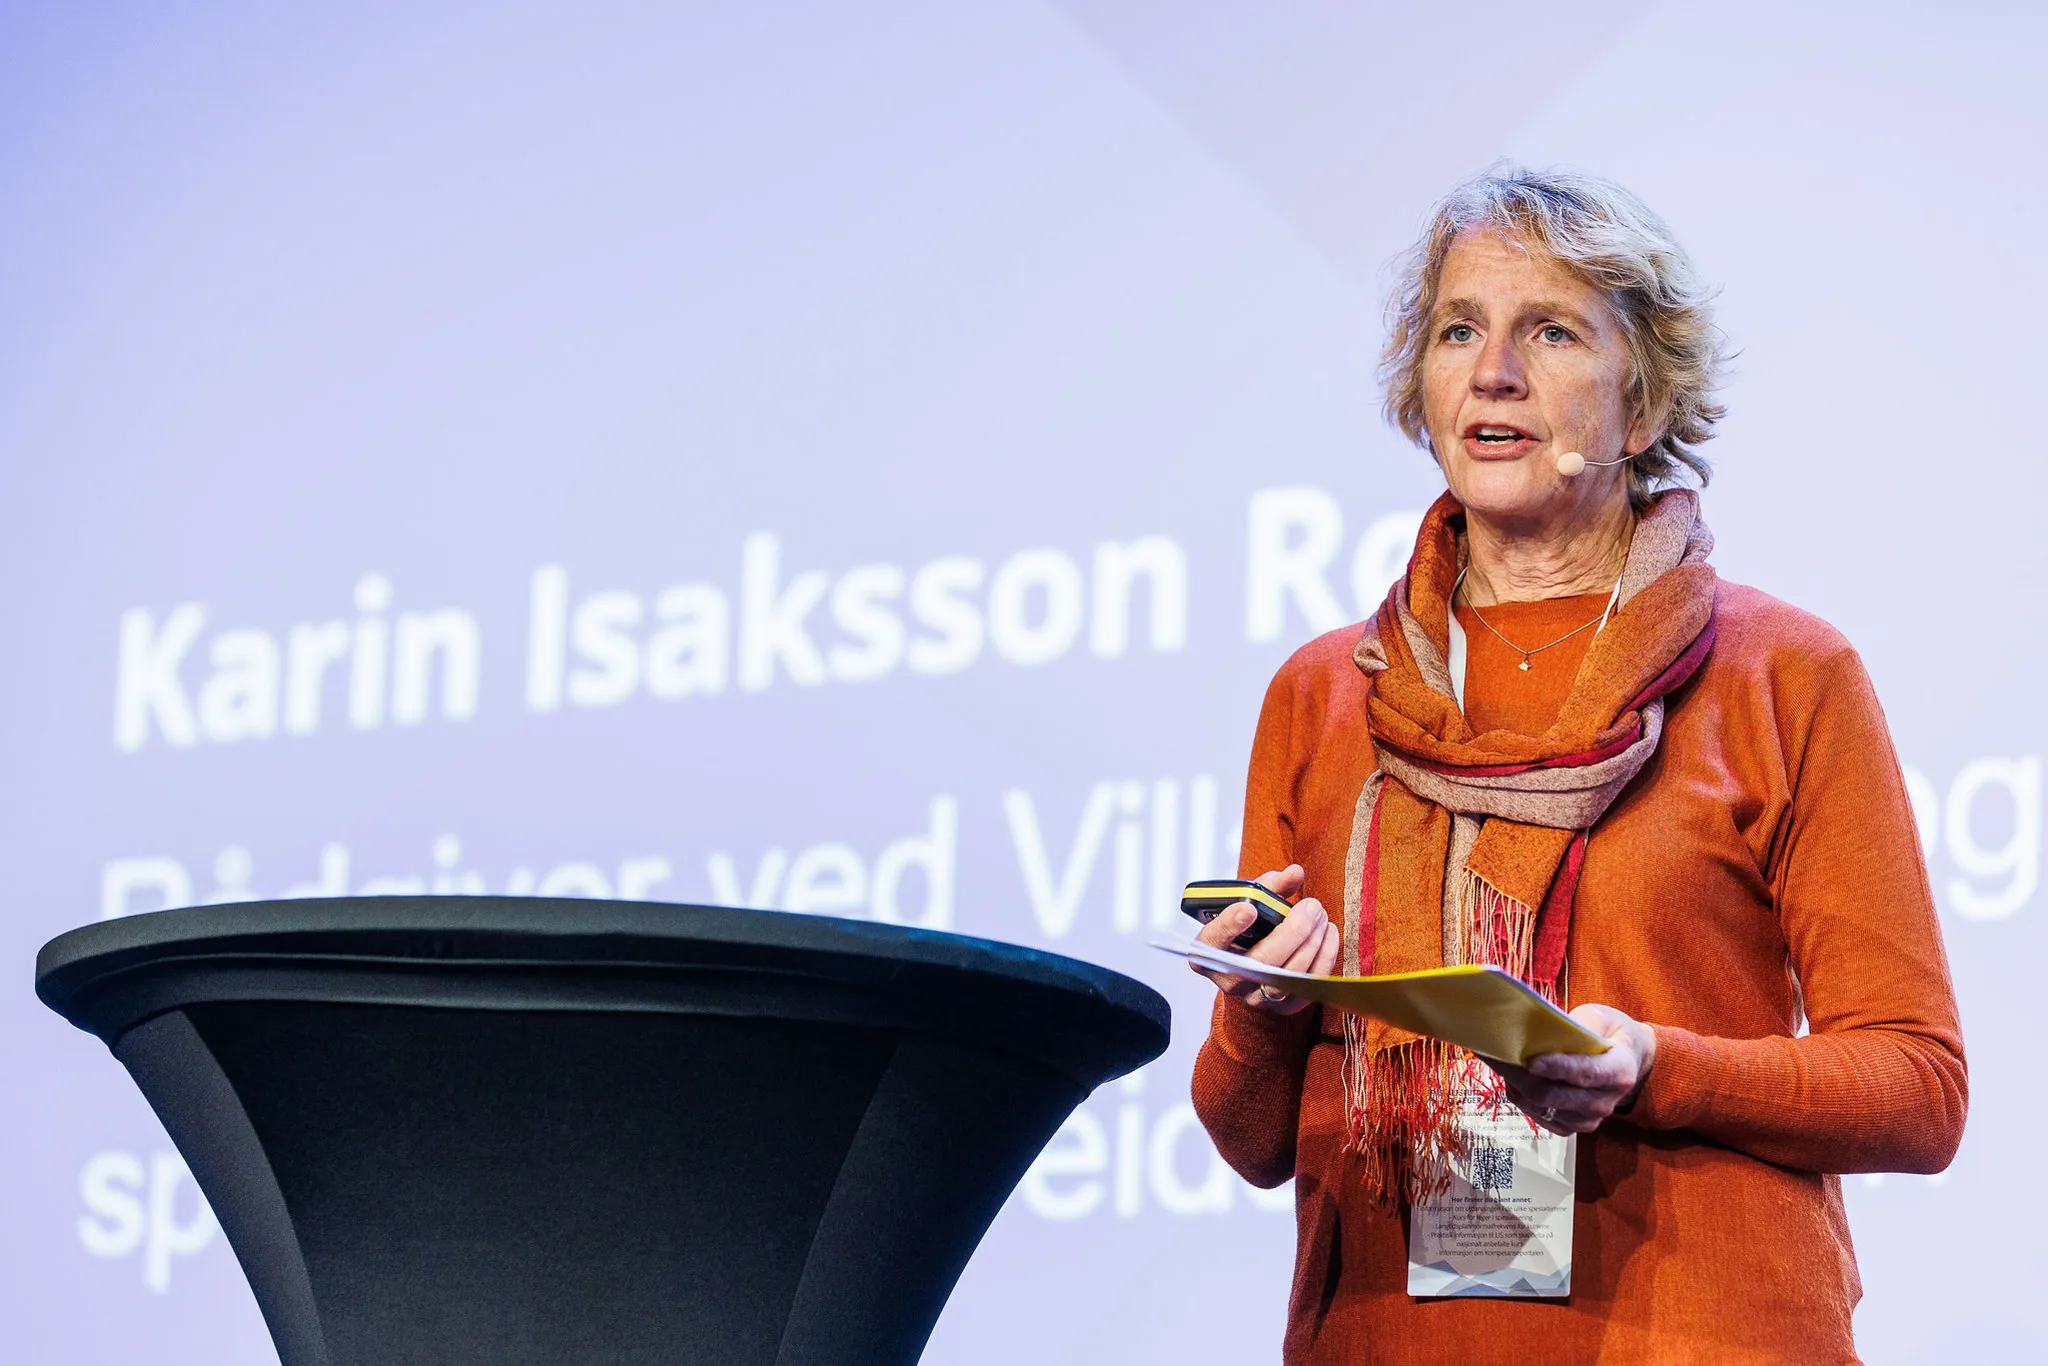 Karin Isaksson Rø som står og snakker på scenen